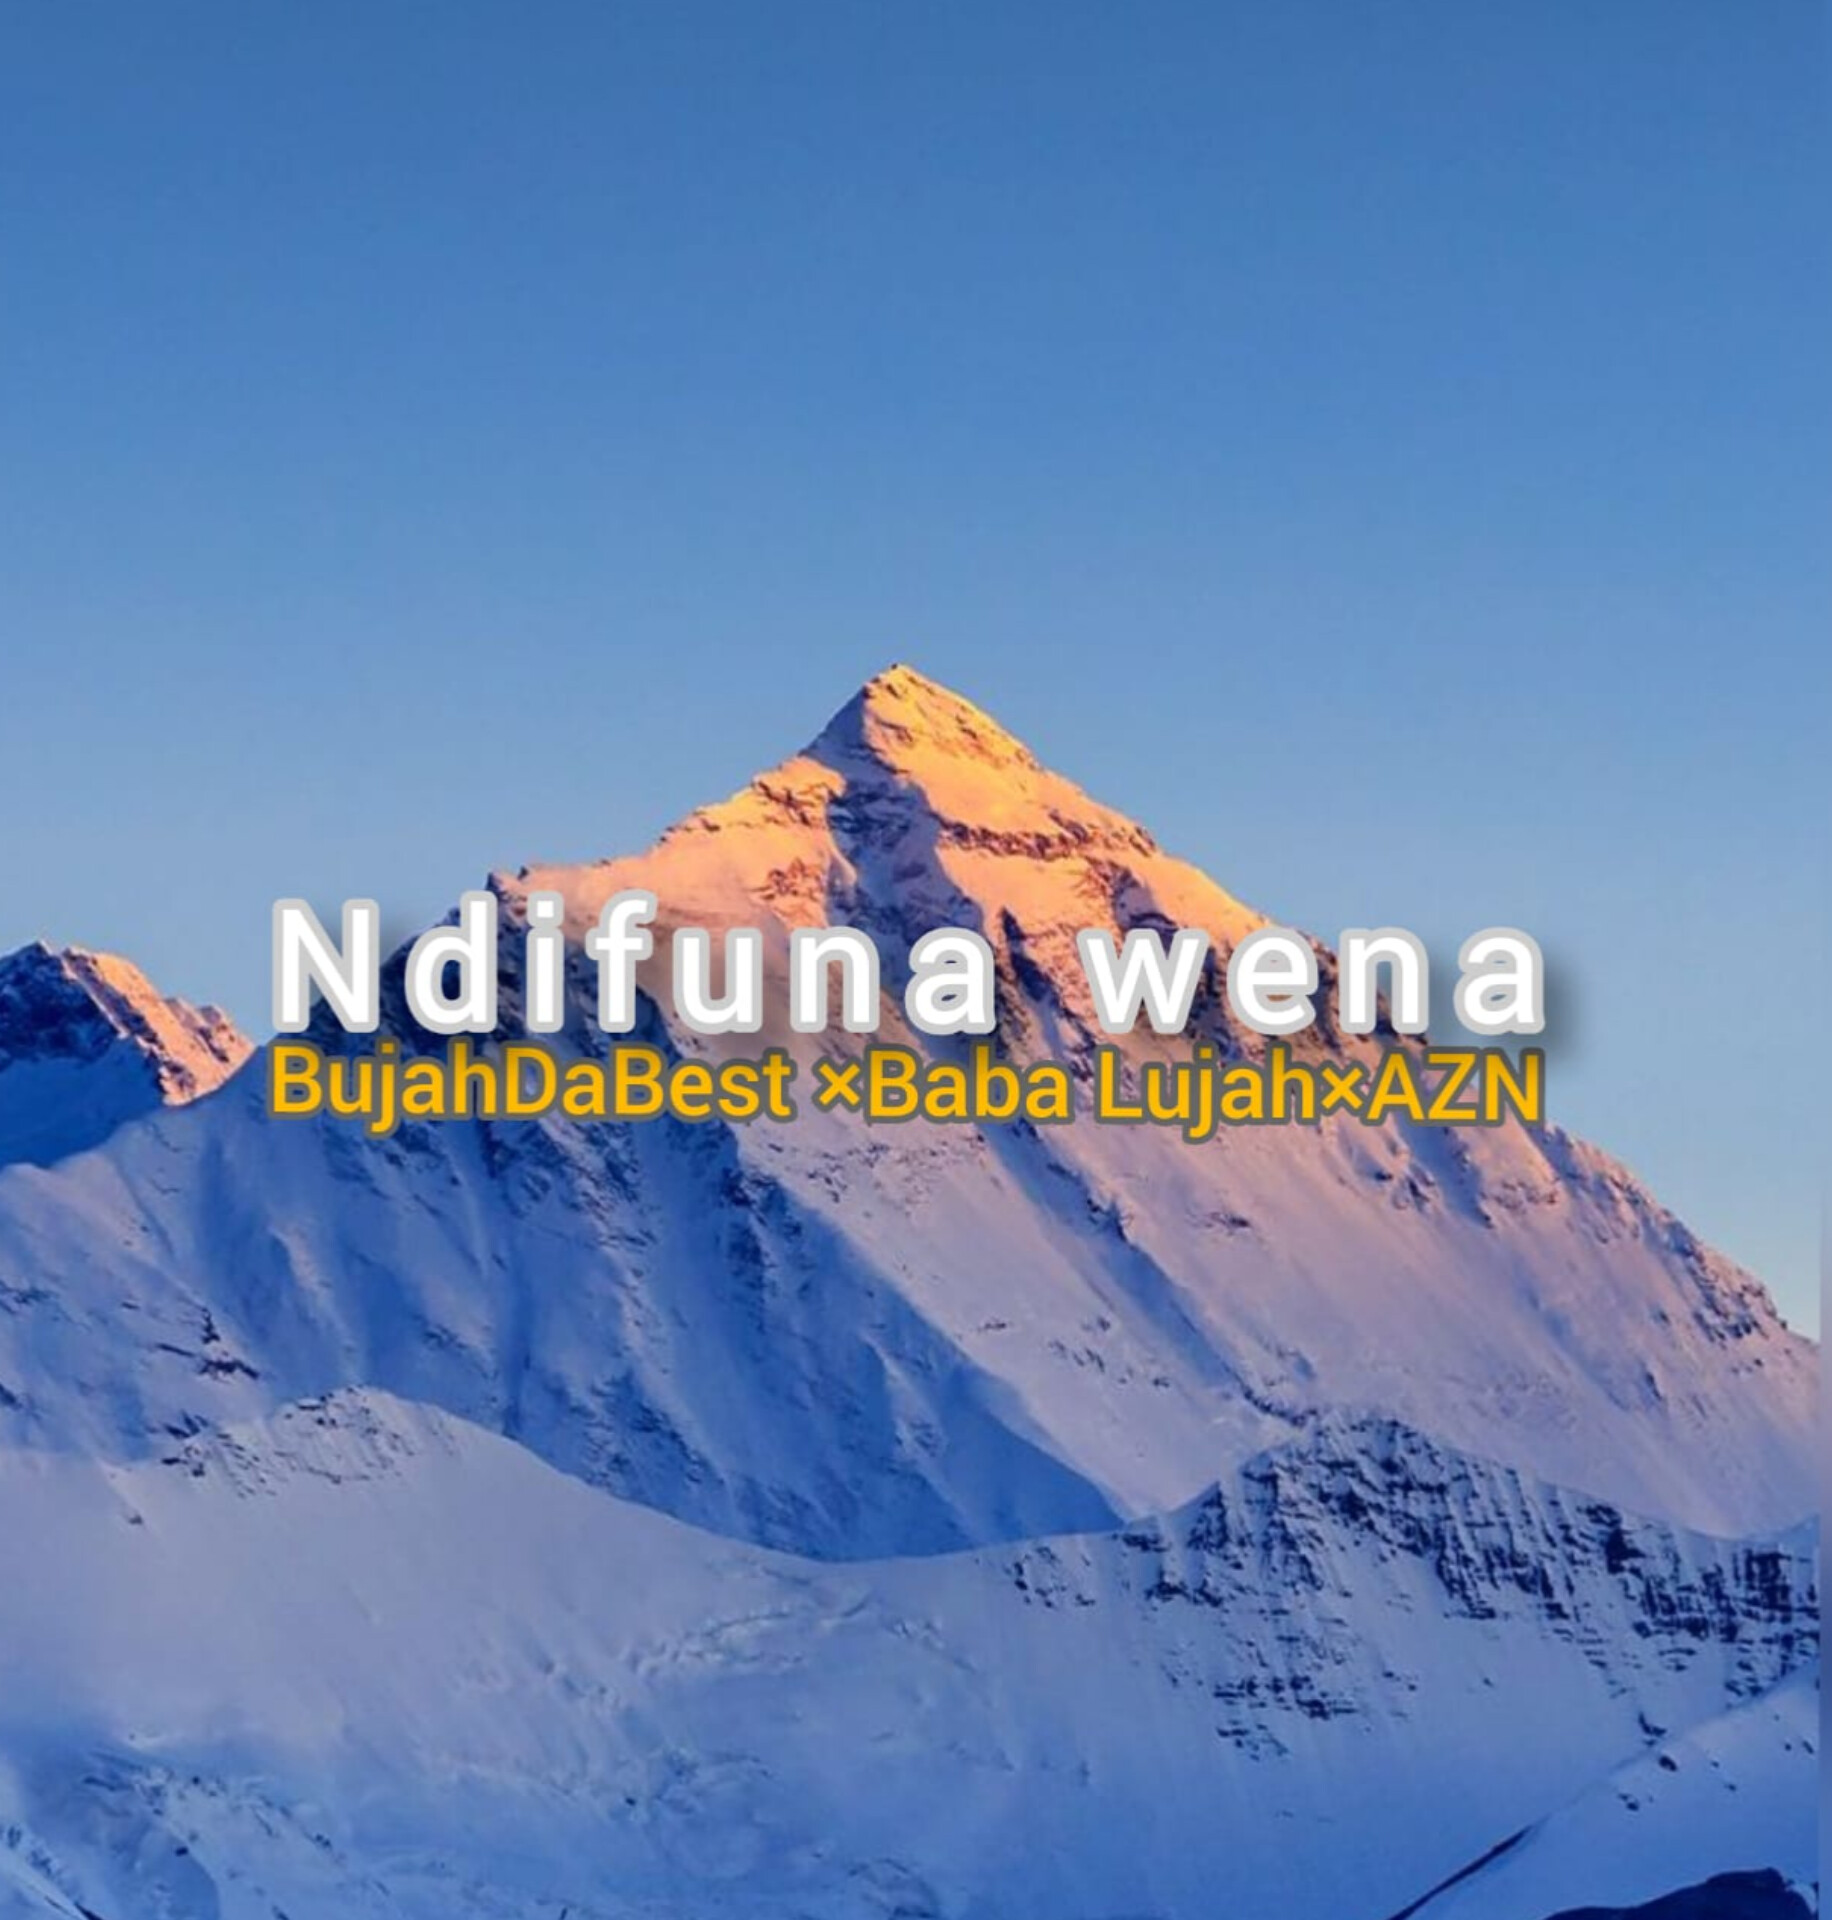 Ndifuna wena - BujahDaBest